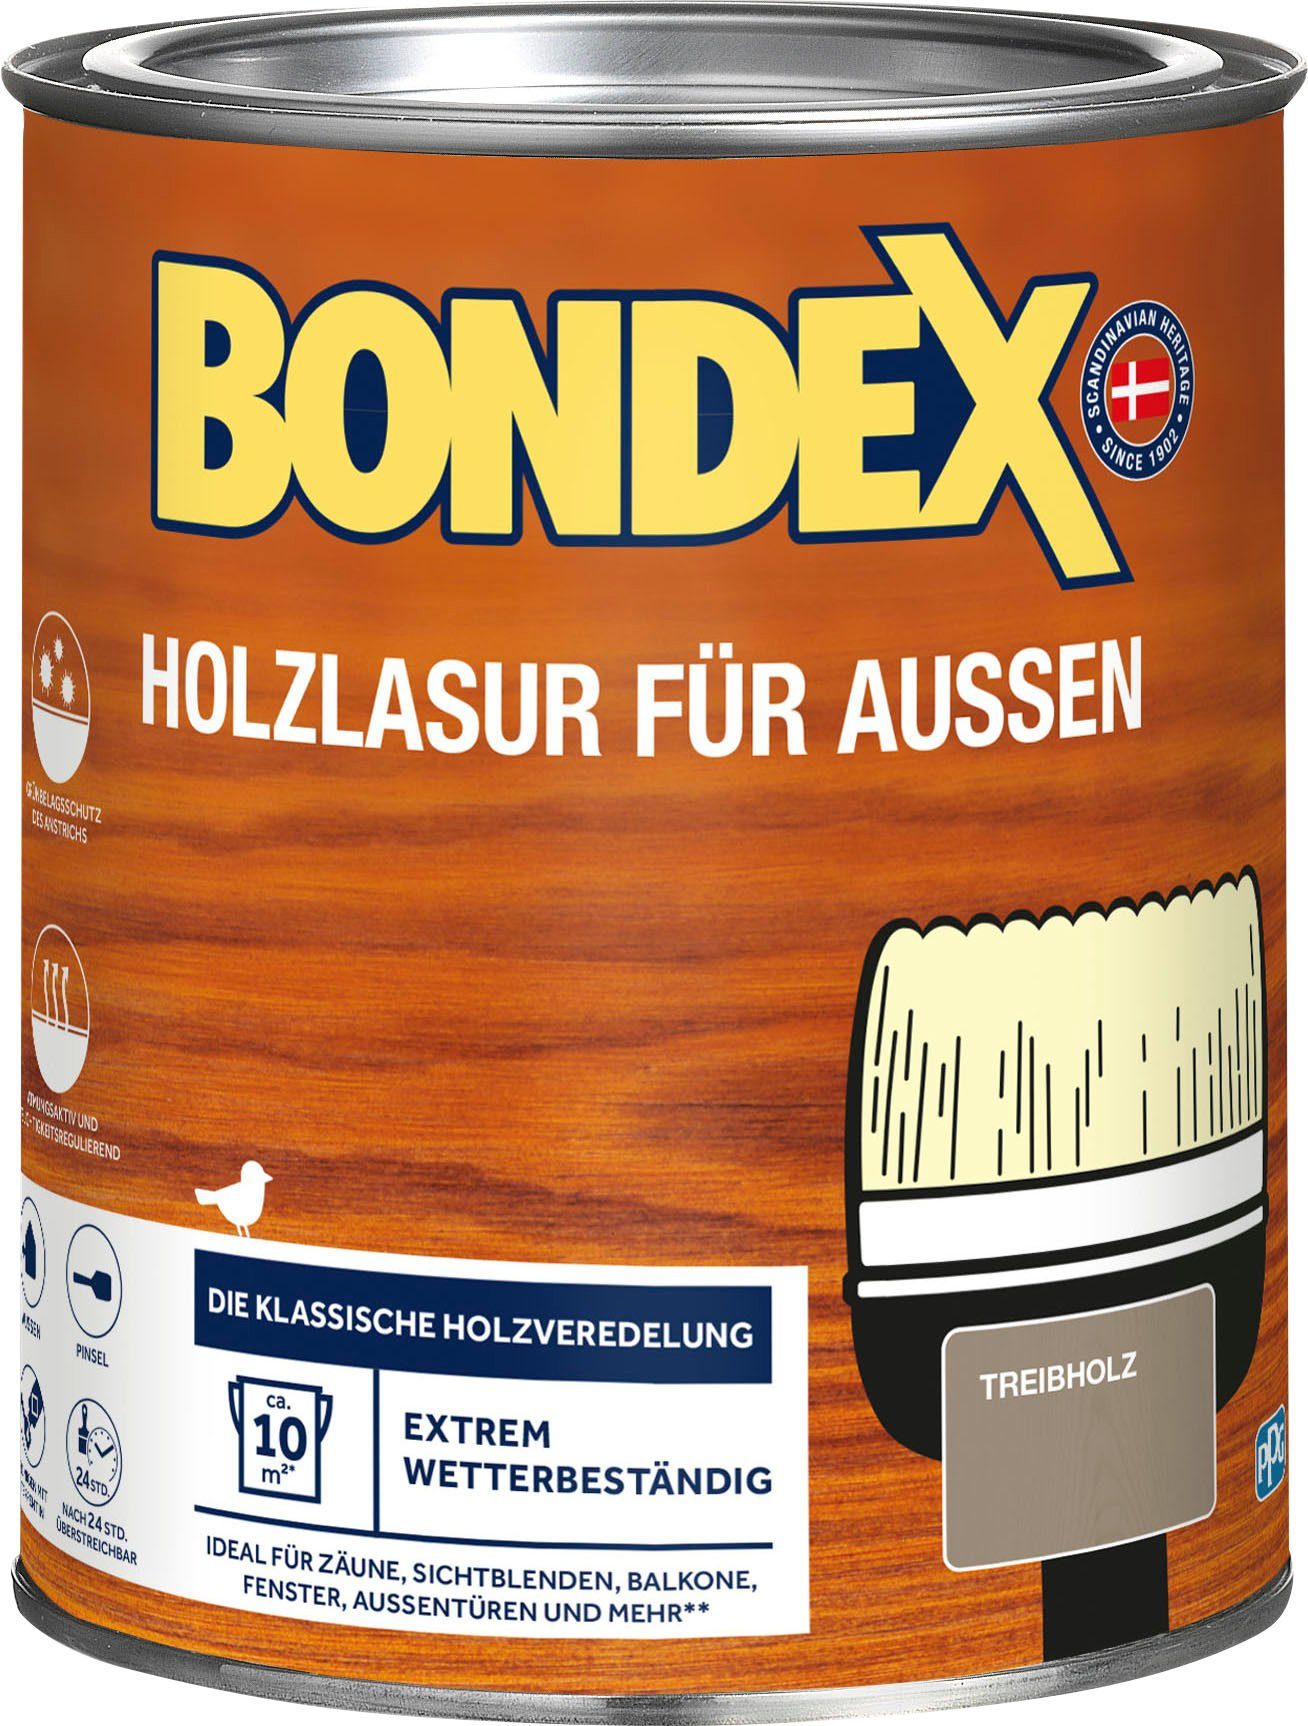 Bondex Holzschutzlasur HOLZLASUR FÜR AUSSEN, Wetterschutz Holzverkleidung, atmungsaktiv, in versch. Farbtönen Treibholz, braun